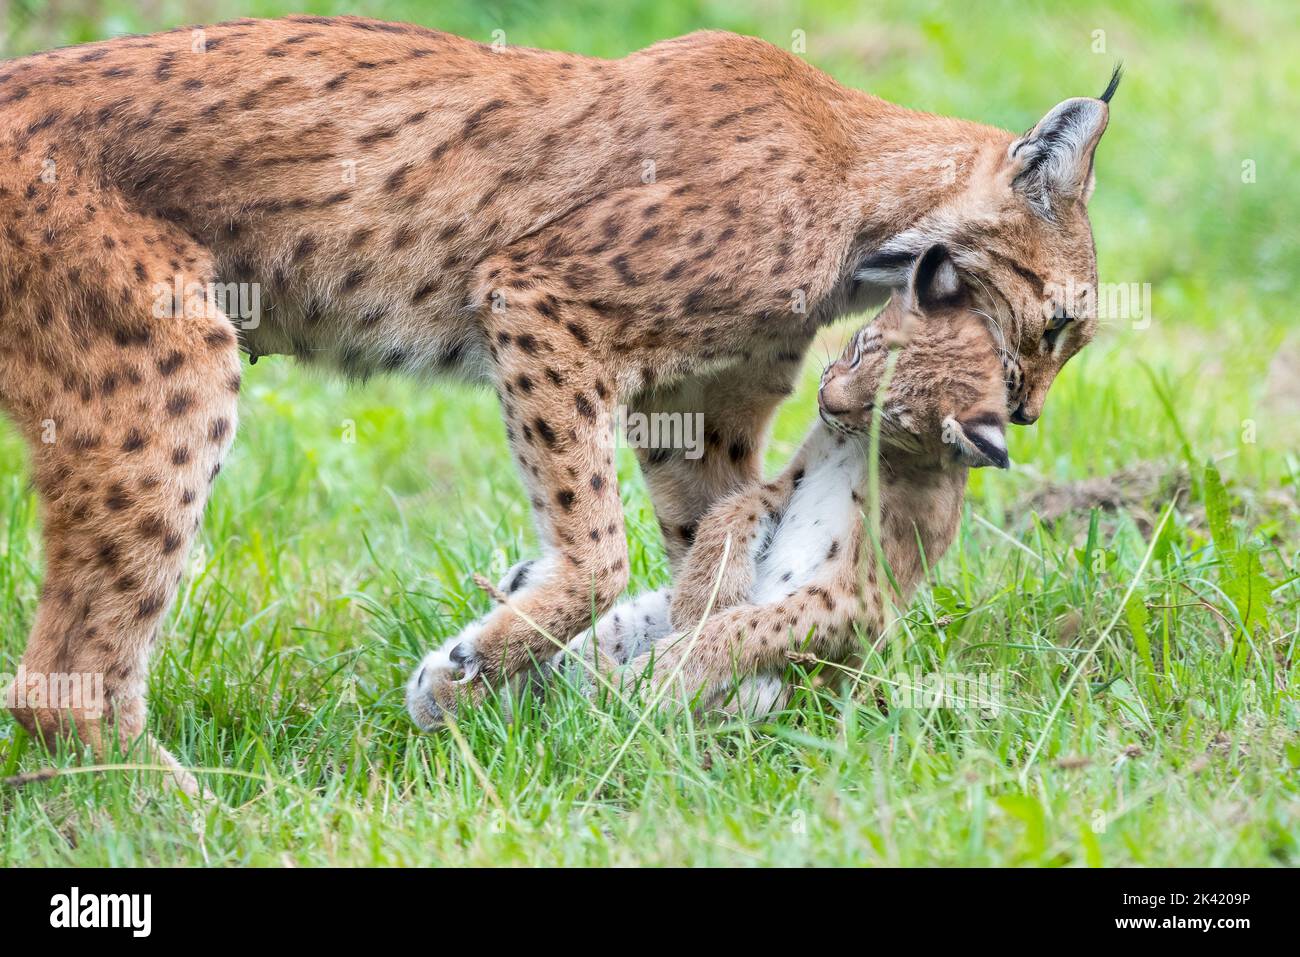 Lynx carrying kitten Stock Photo